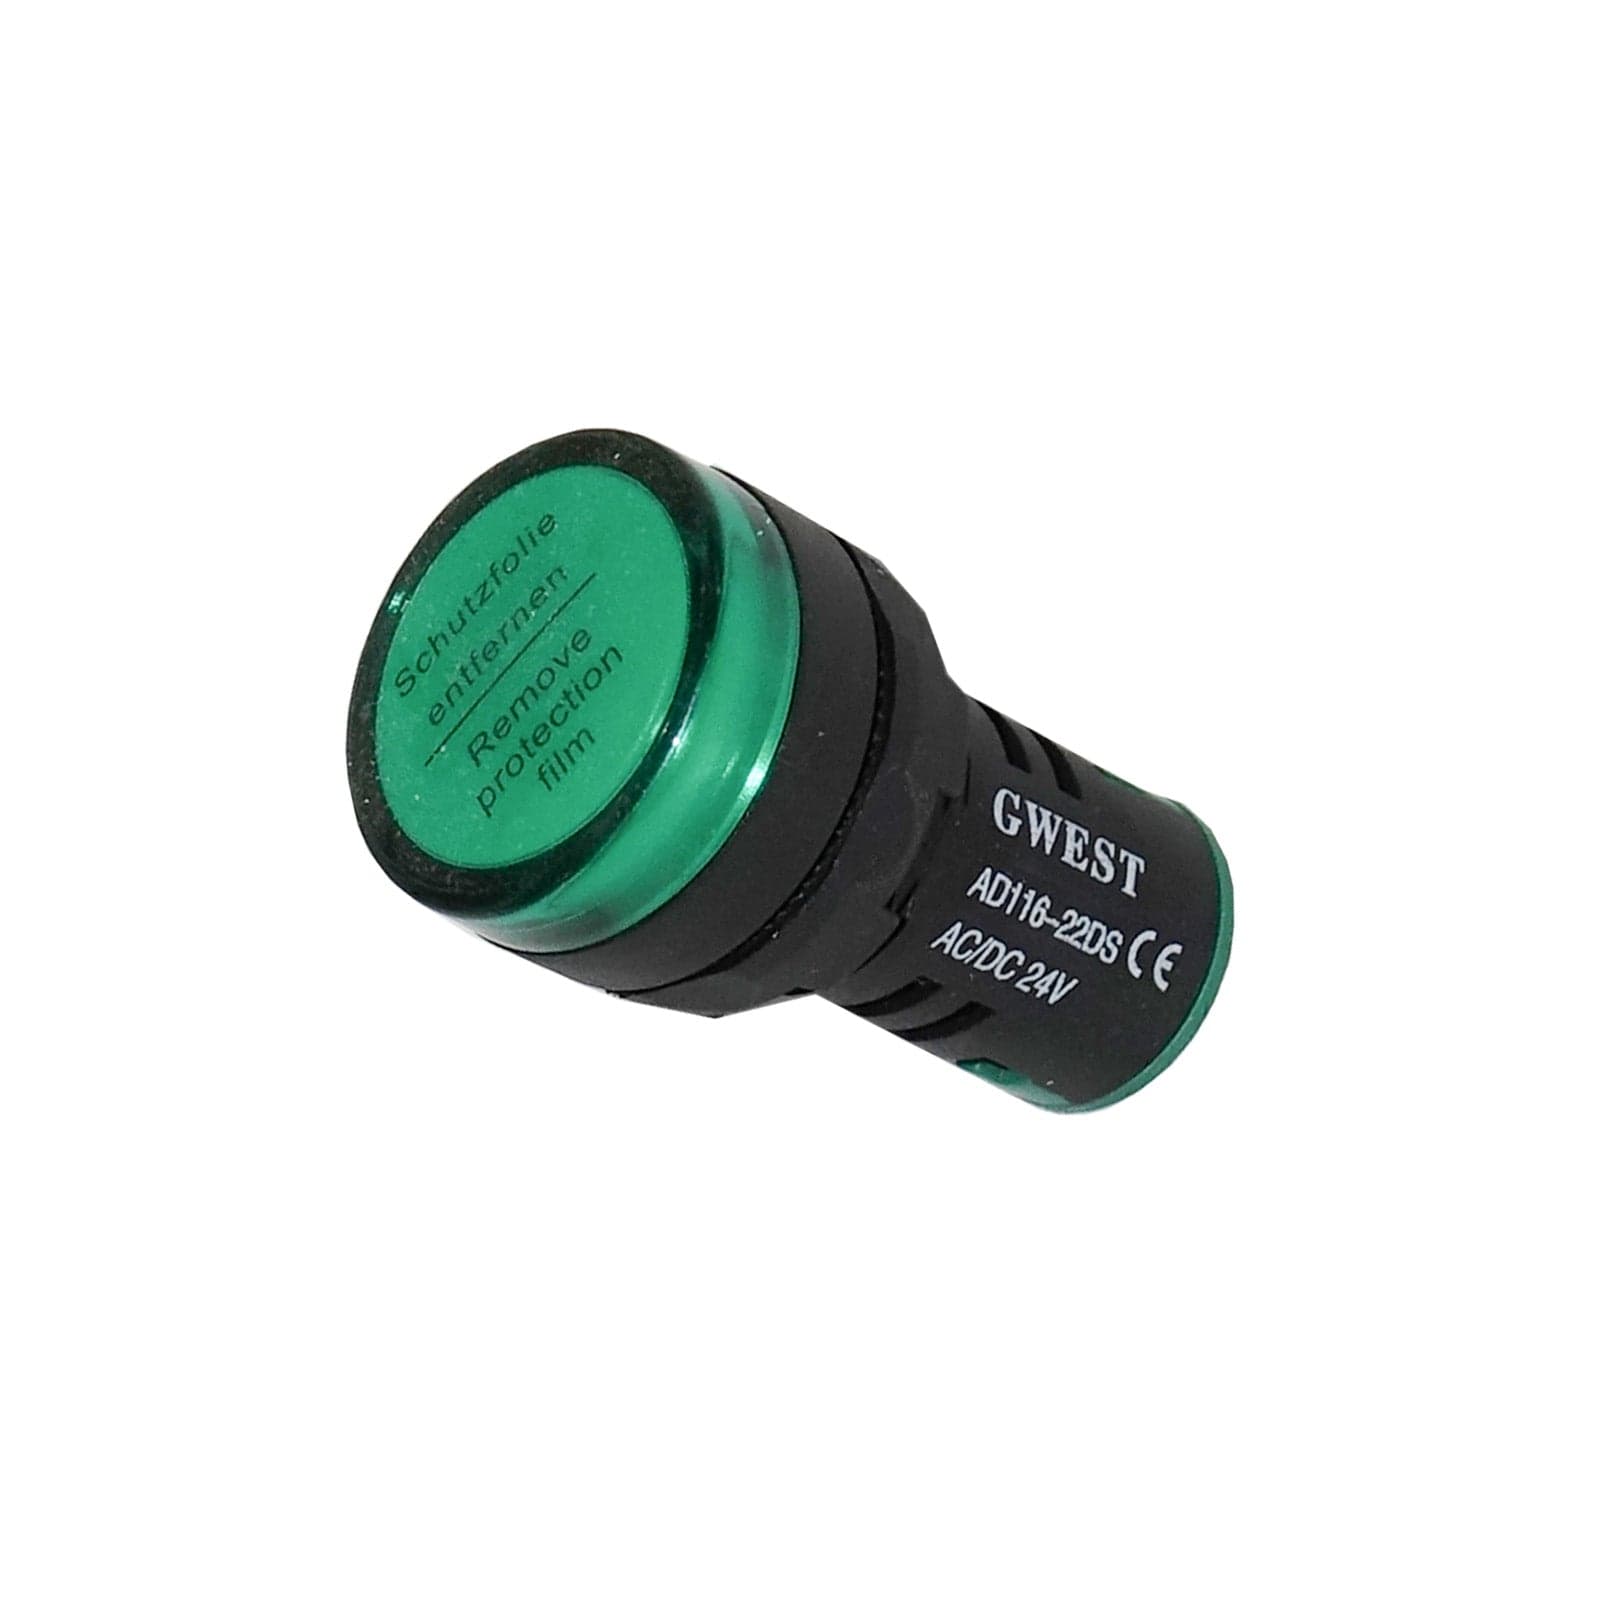 Signalleuchte LED rot|grün 24|230V Ampel Anzeige Schaltzustand, Warnlicht  LED